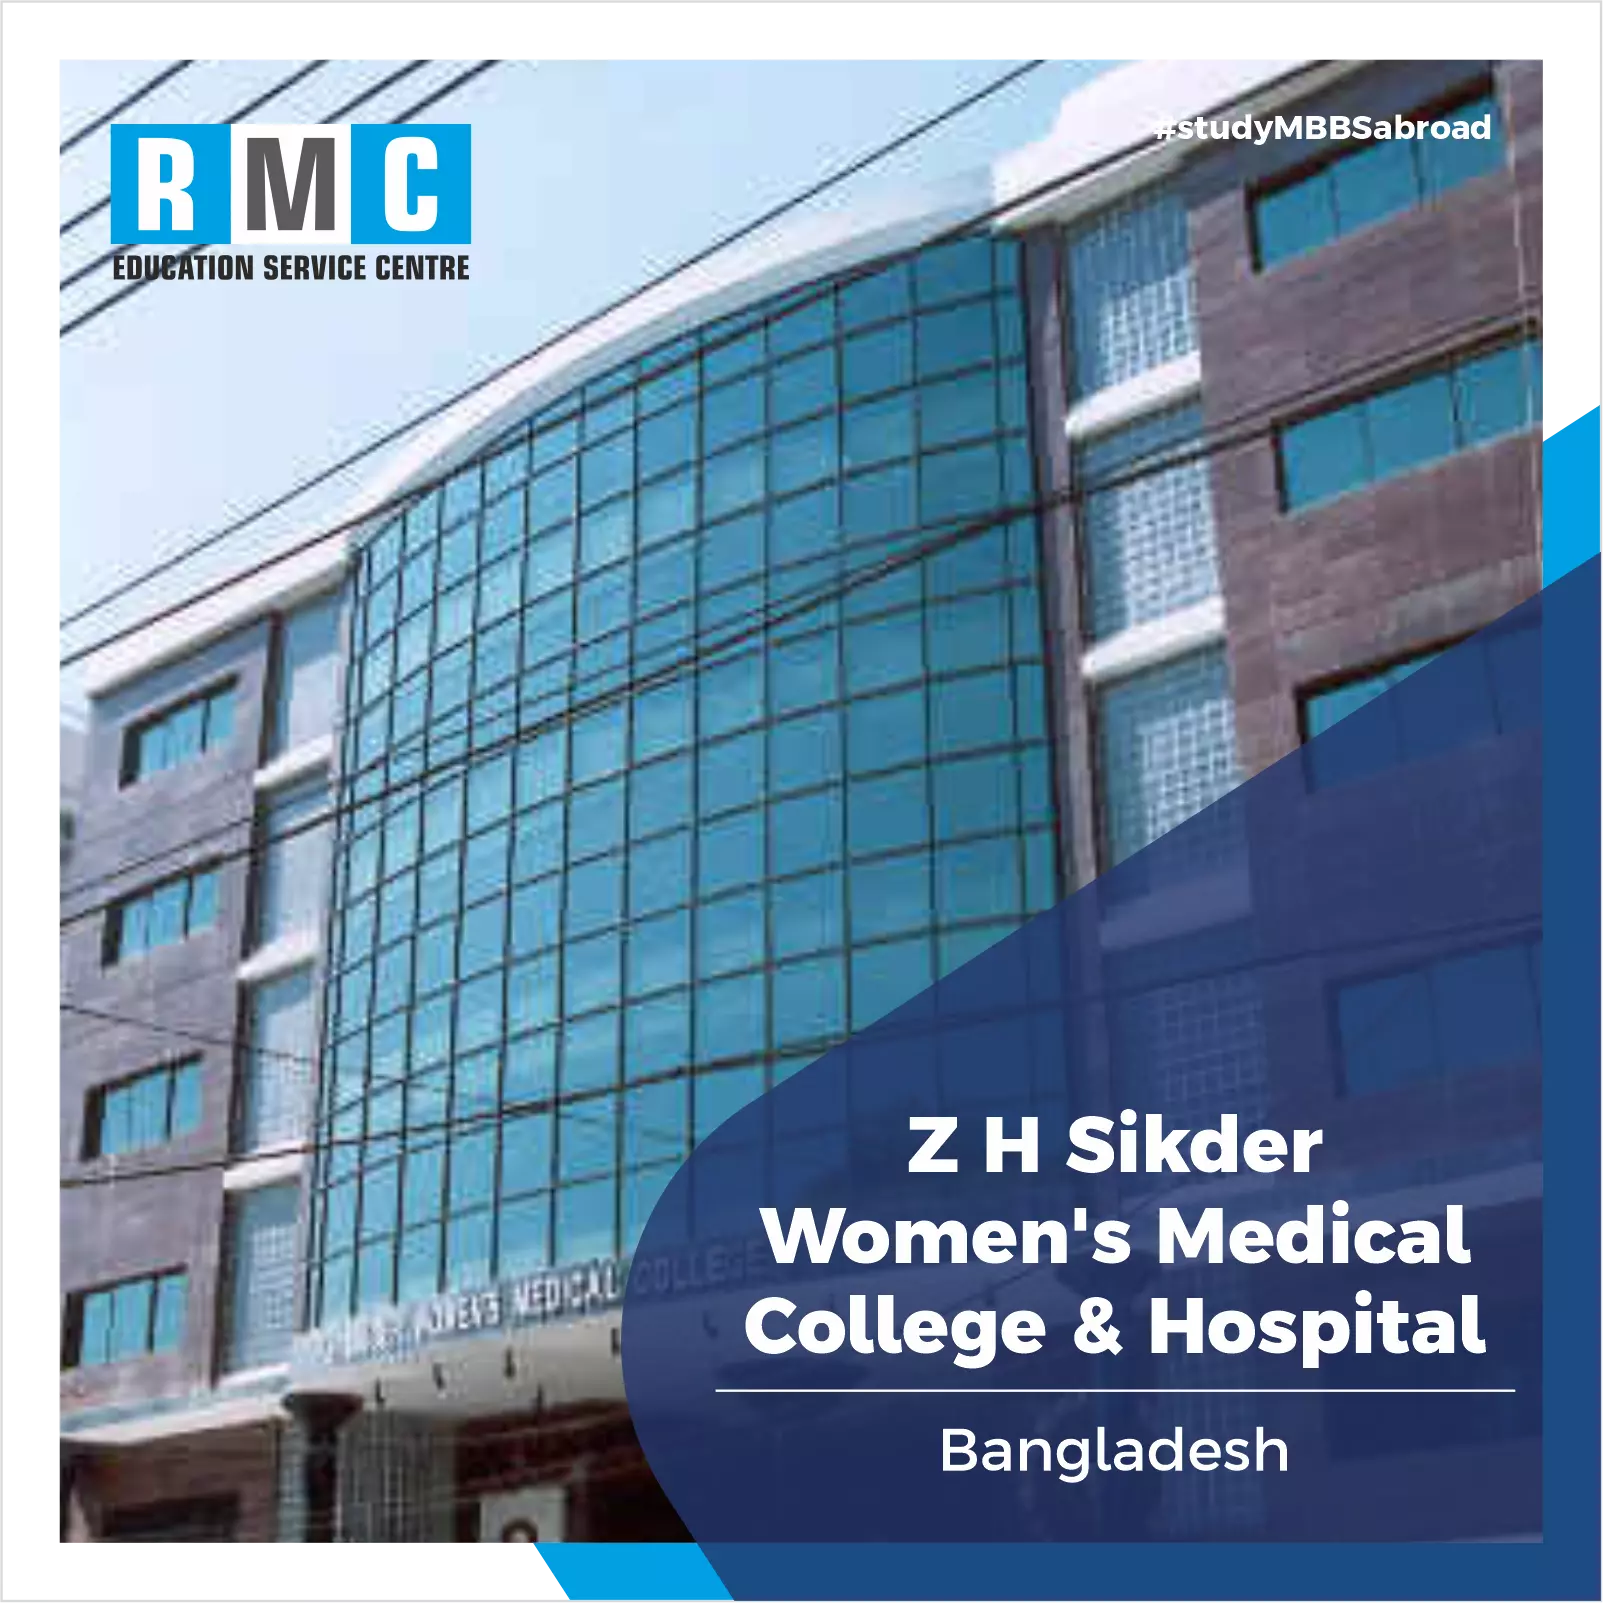 Z H Sikder Women's Medical College & Hospital